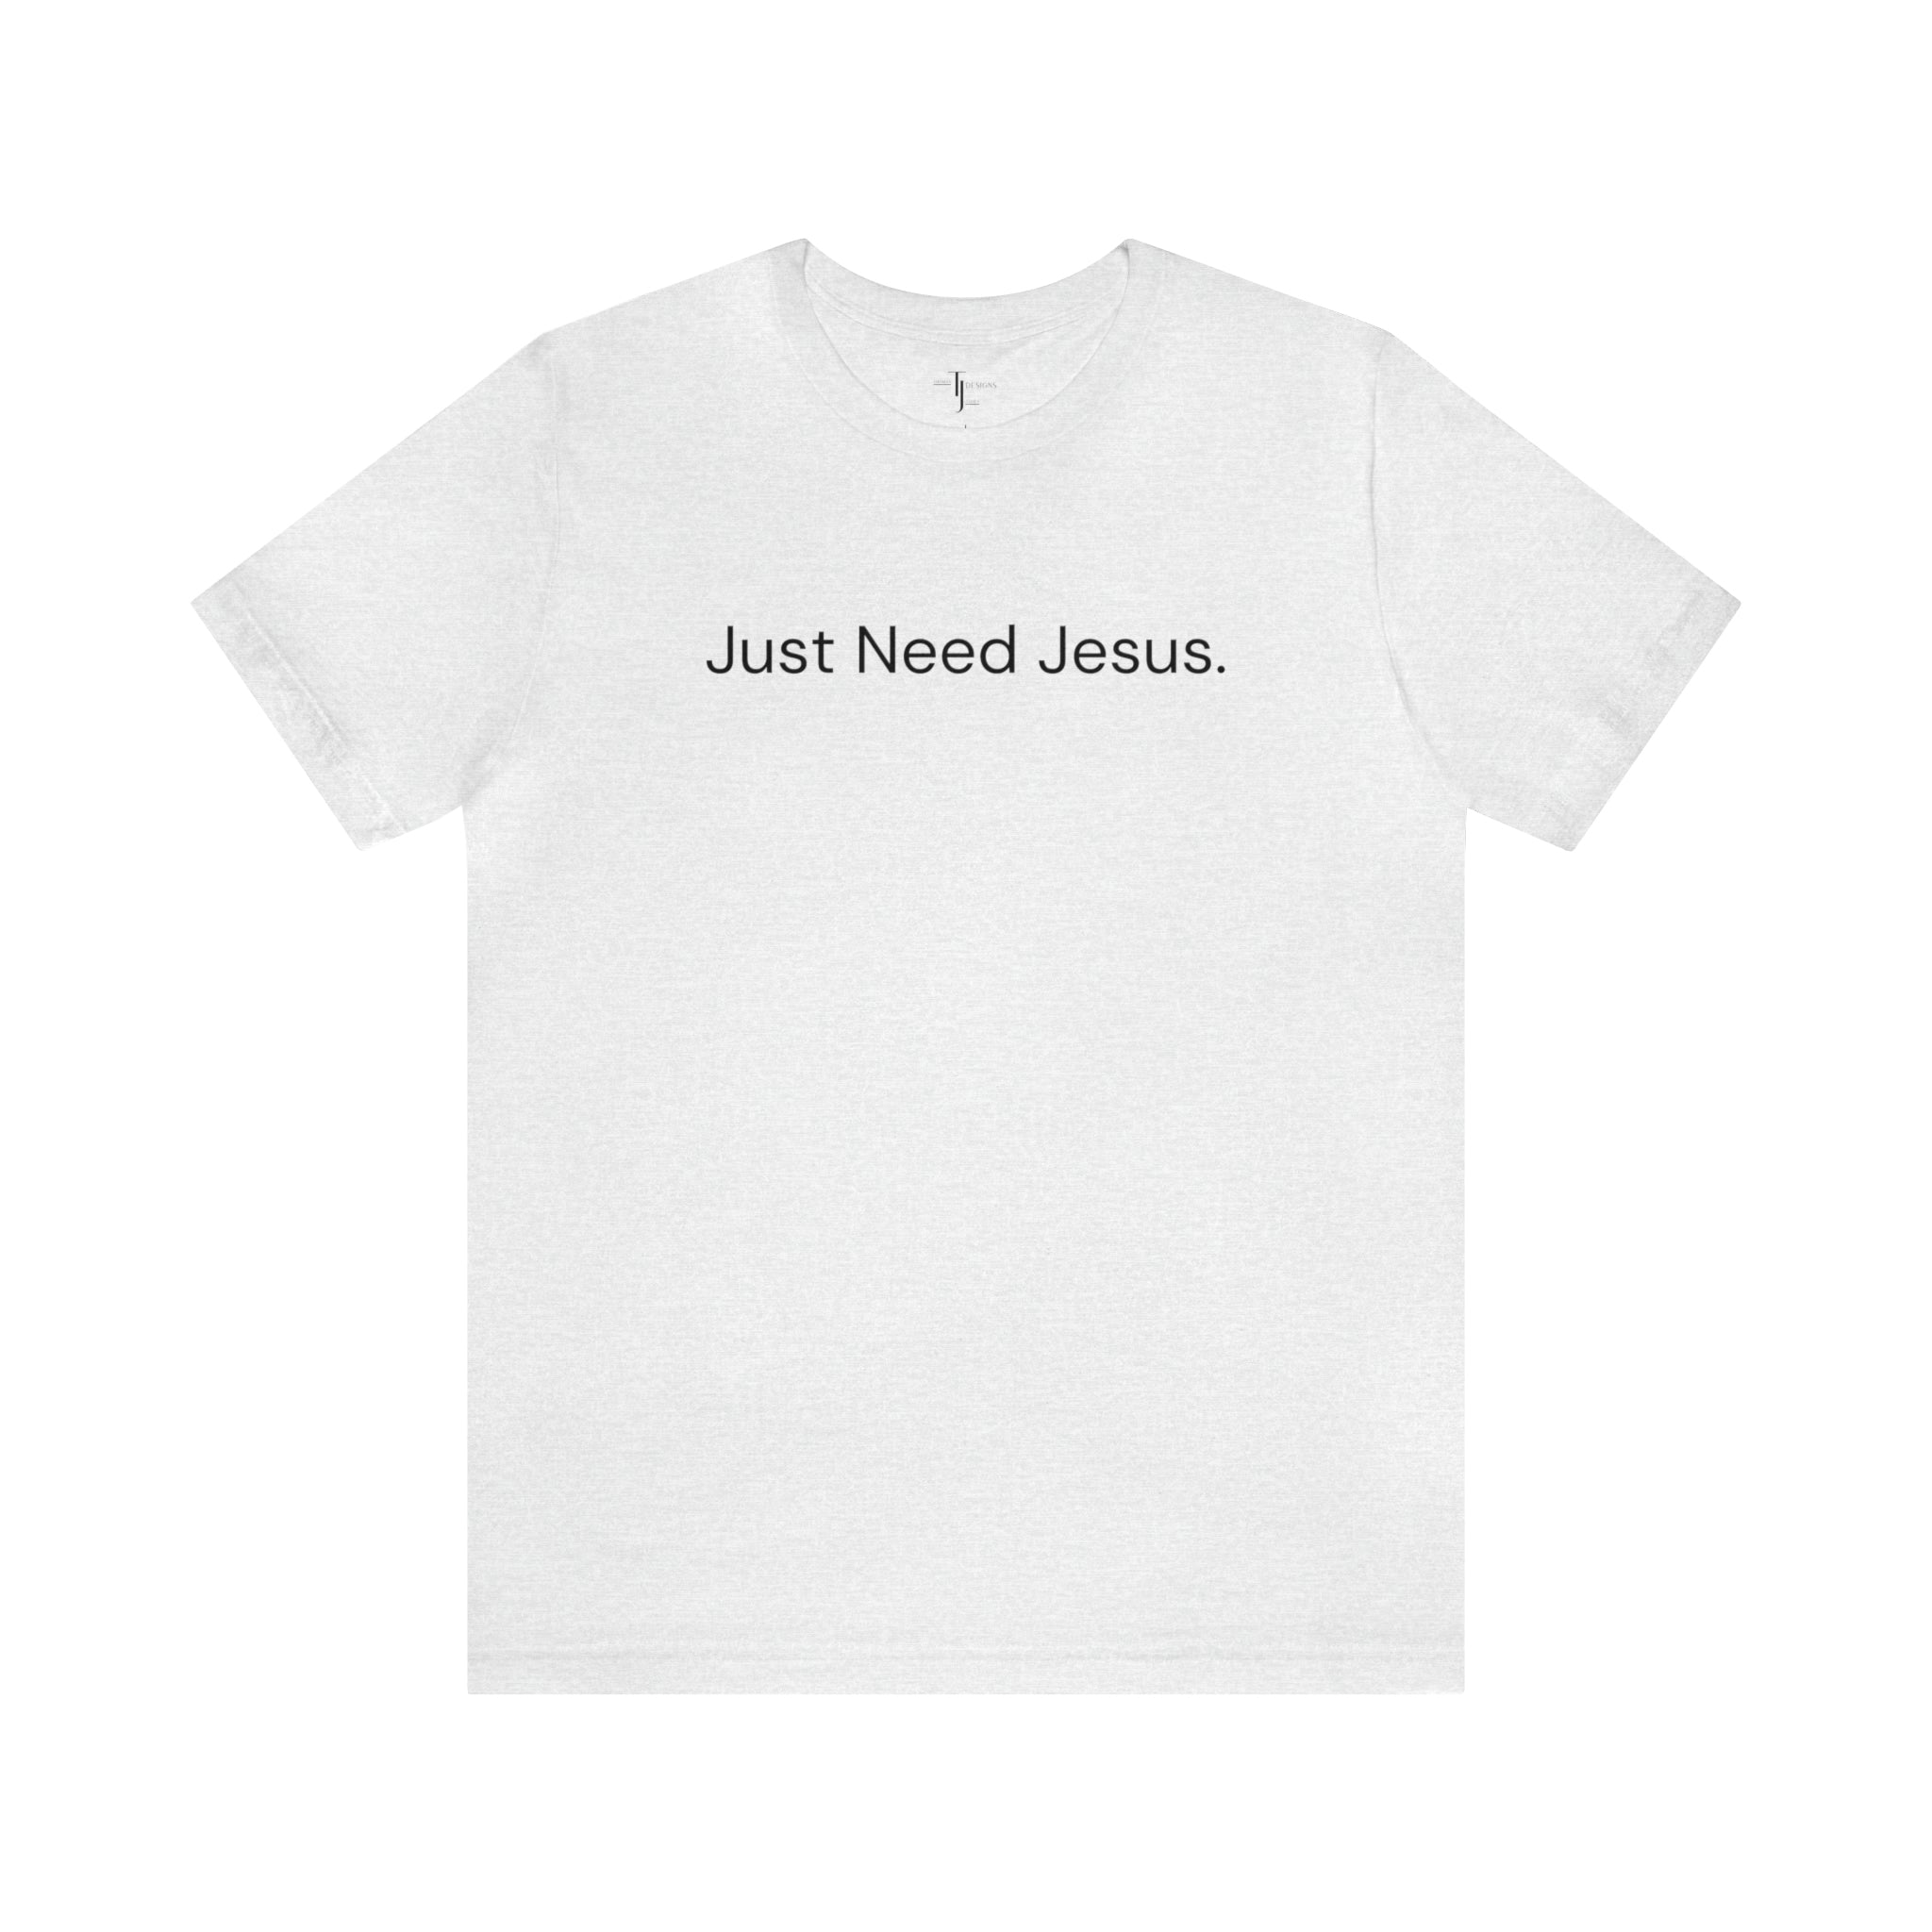 Just Need Jesus. Tee (Unisex)